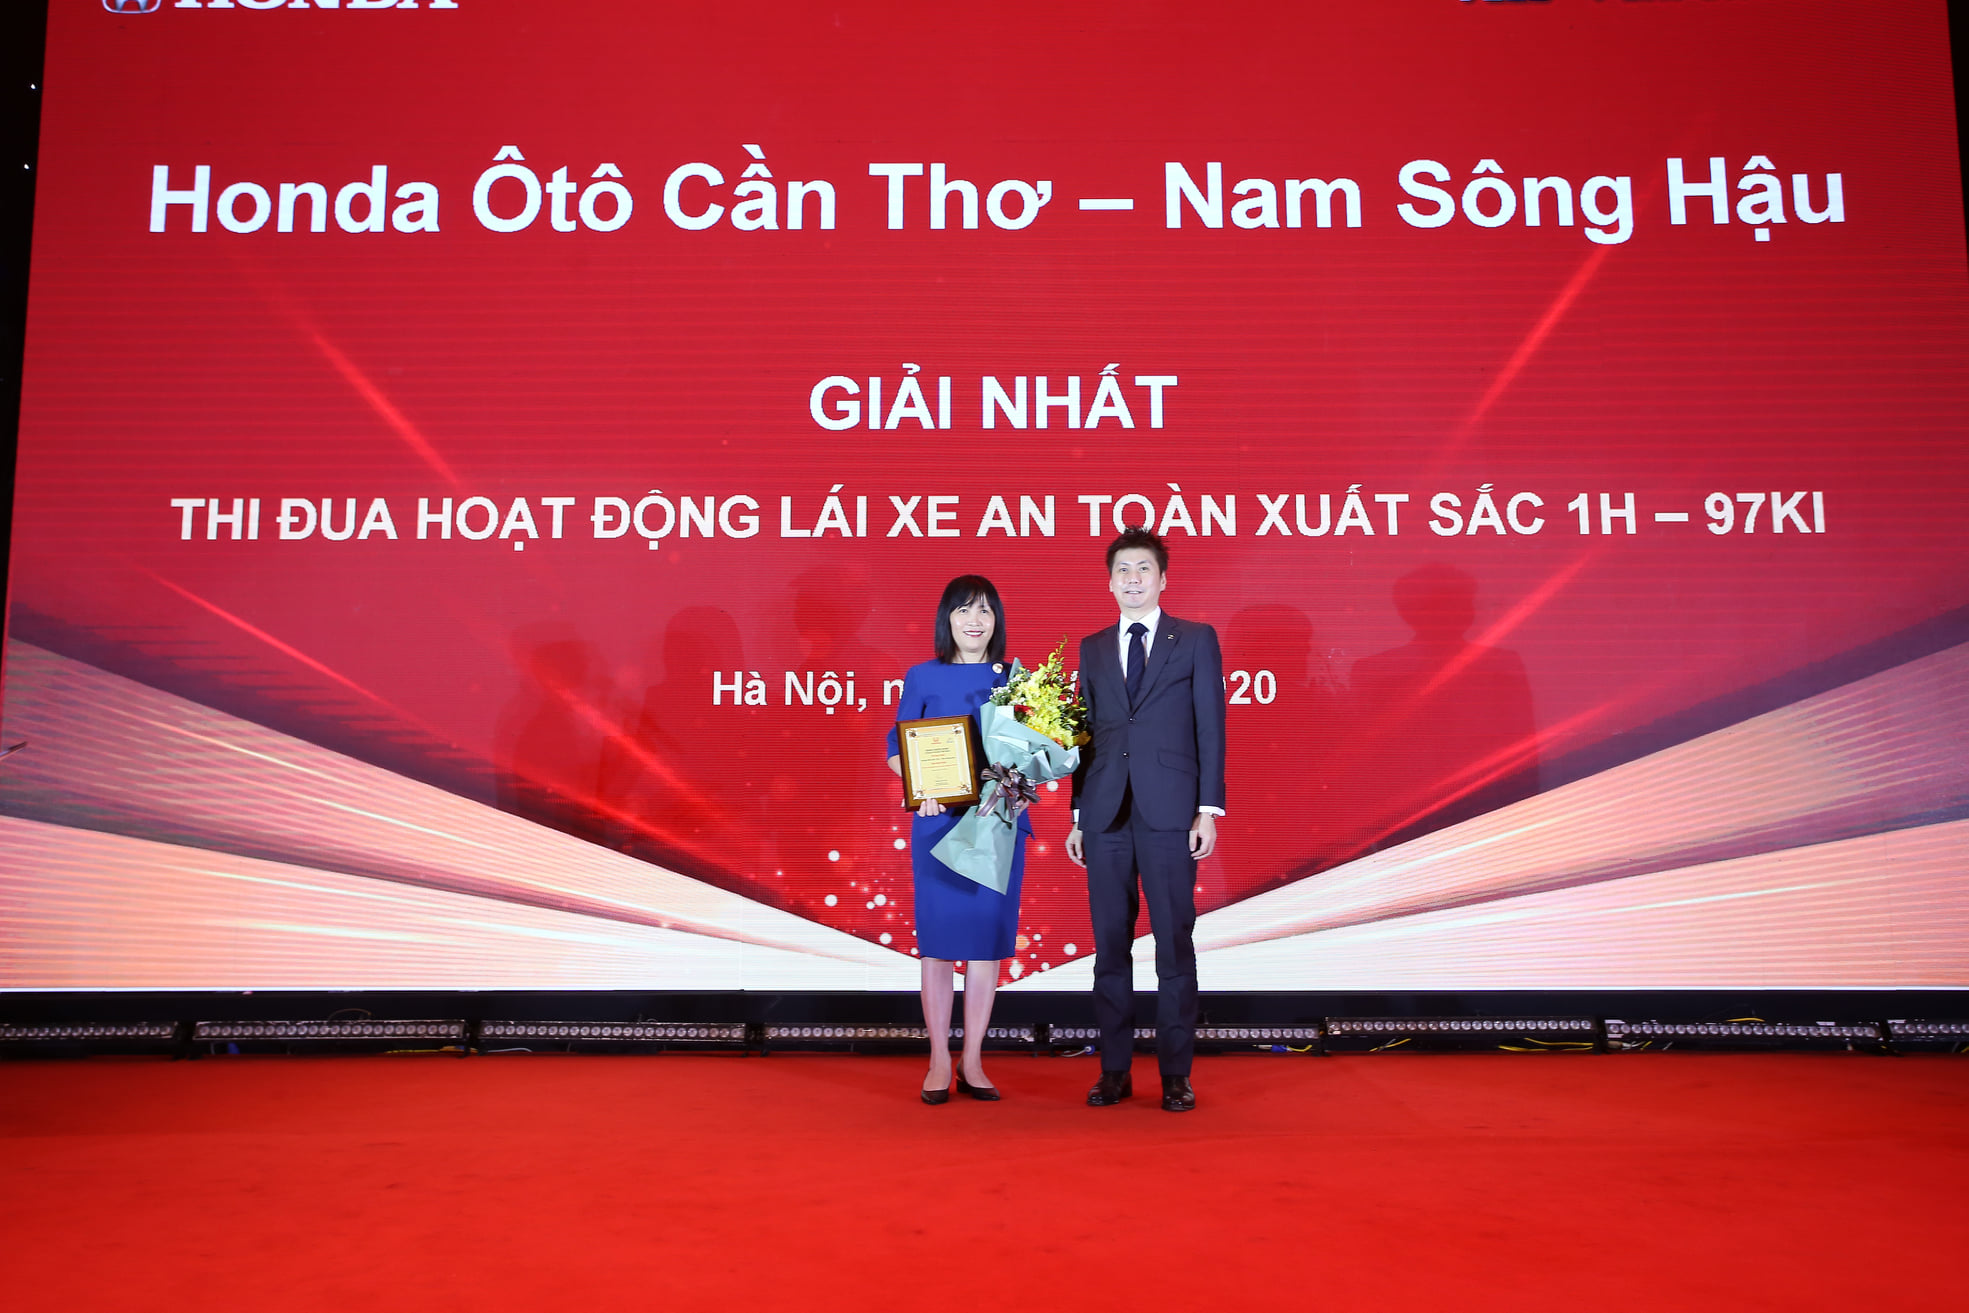 Honda Ô tô Cần Thơ nhận giải nhất thi đua Lái Xe An Toàn từ Honda Việt Nam